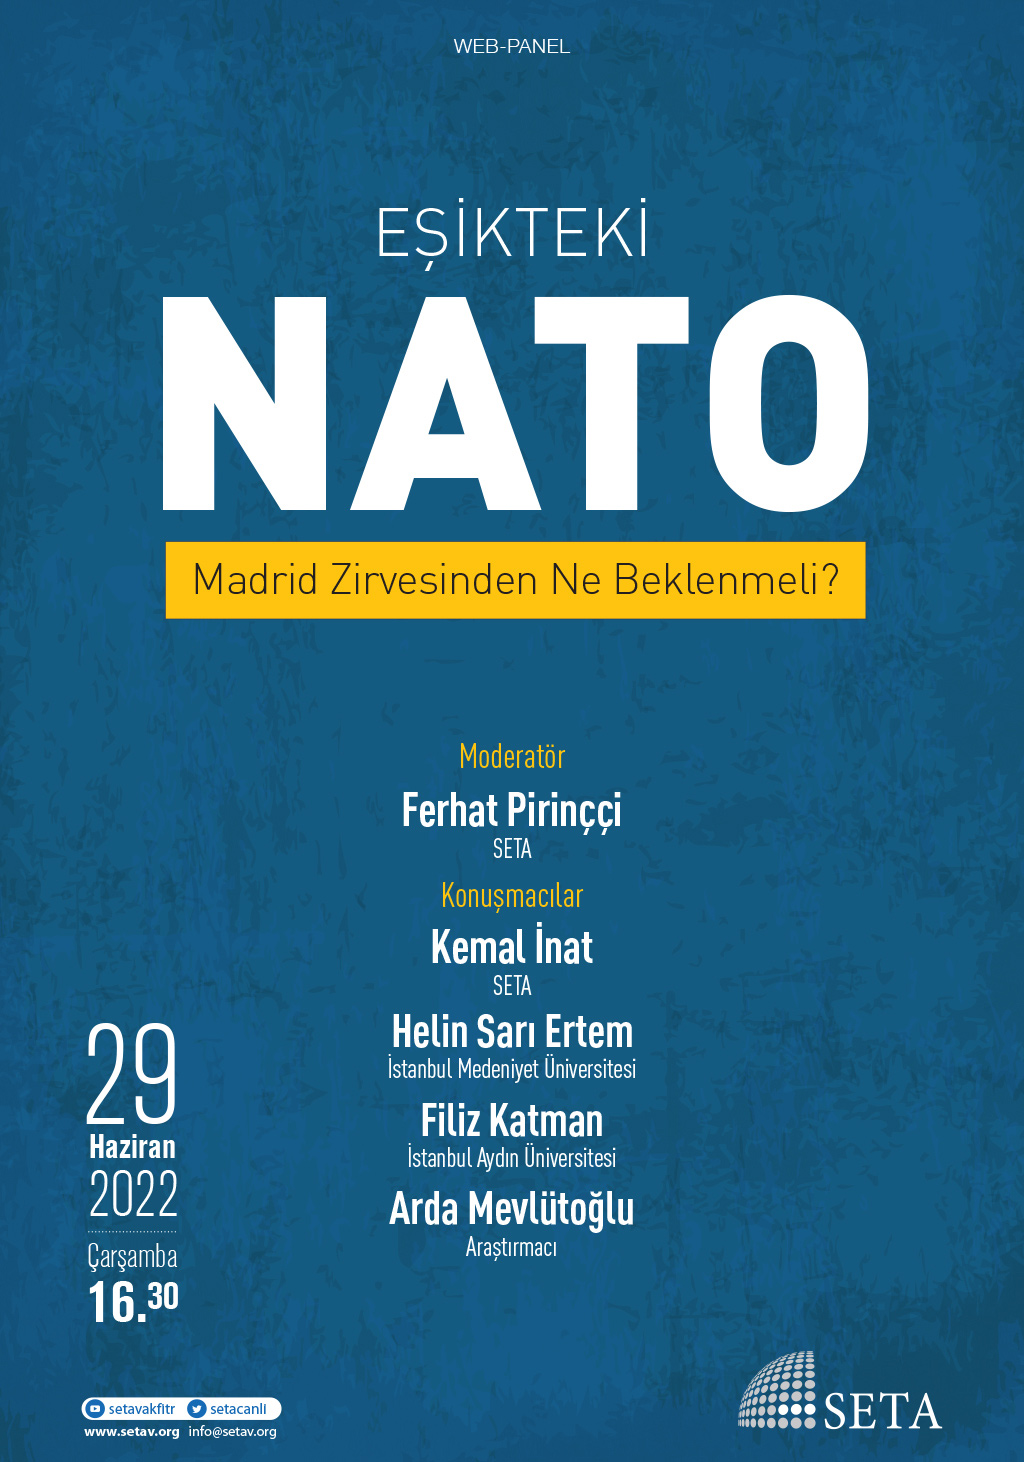 Web Panel: Eşikteki NATO | Madrid Zirvesinden Ne Beklenmeli?